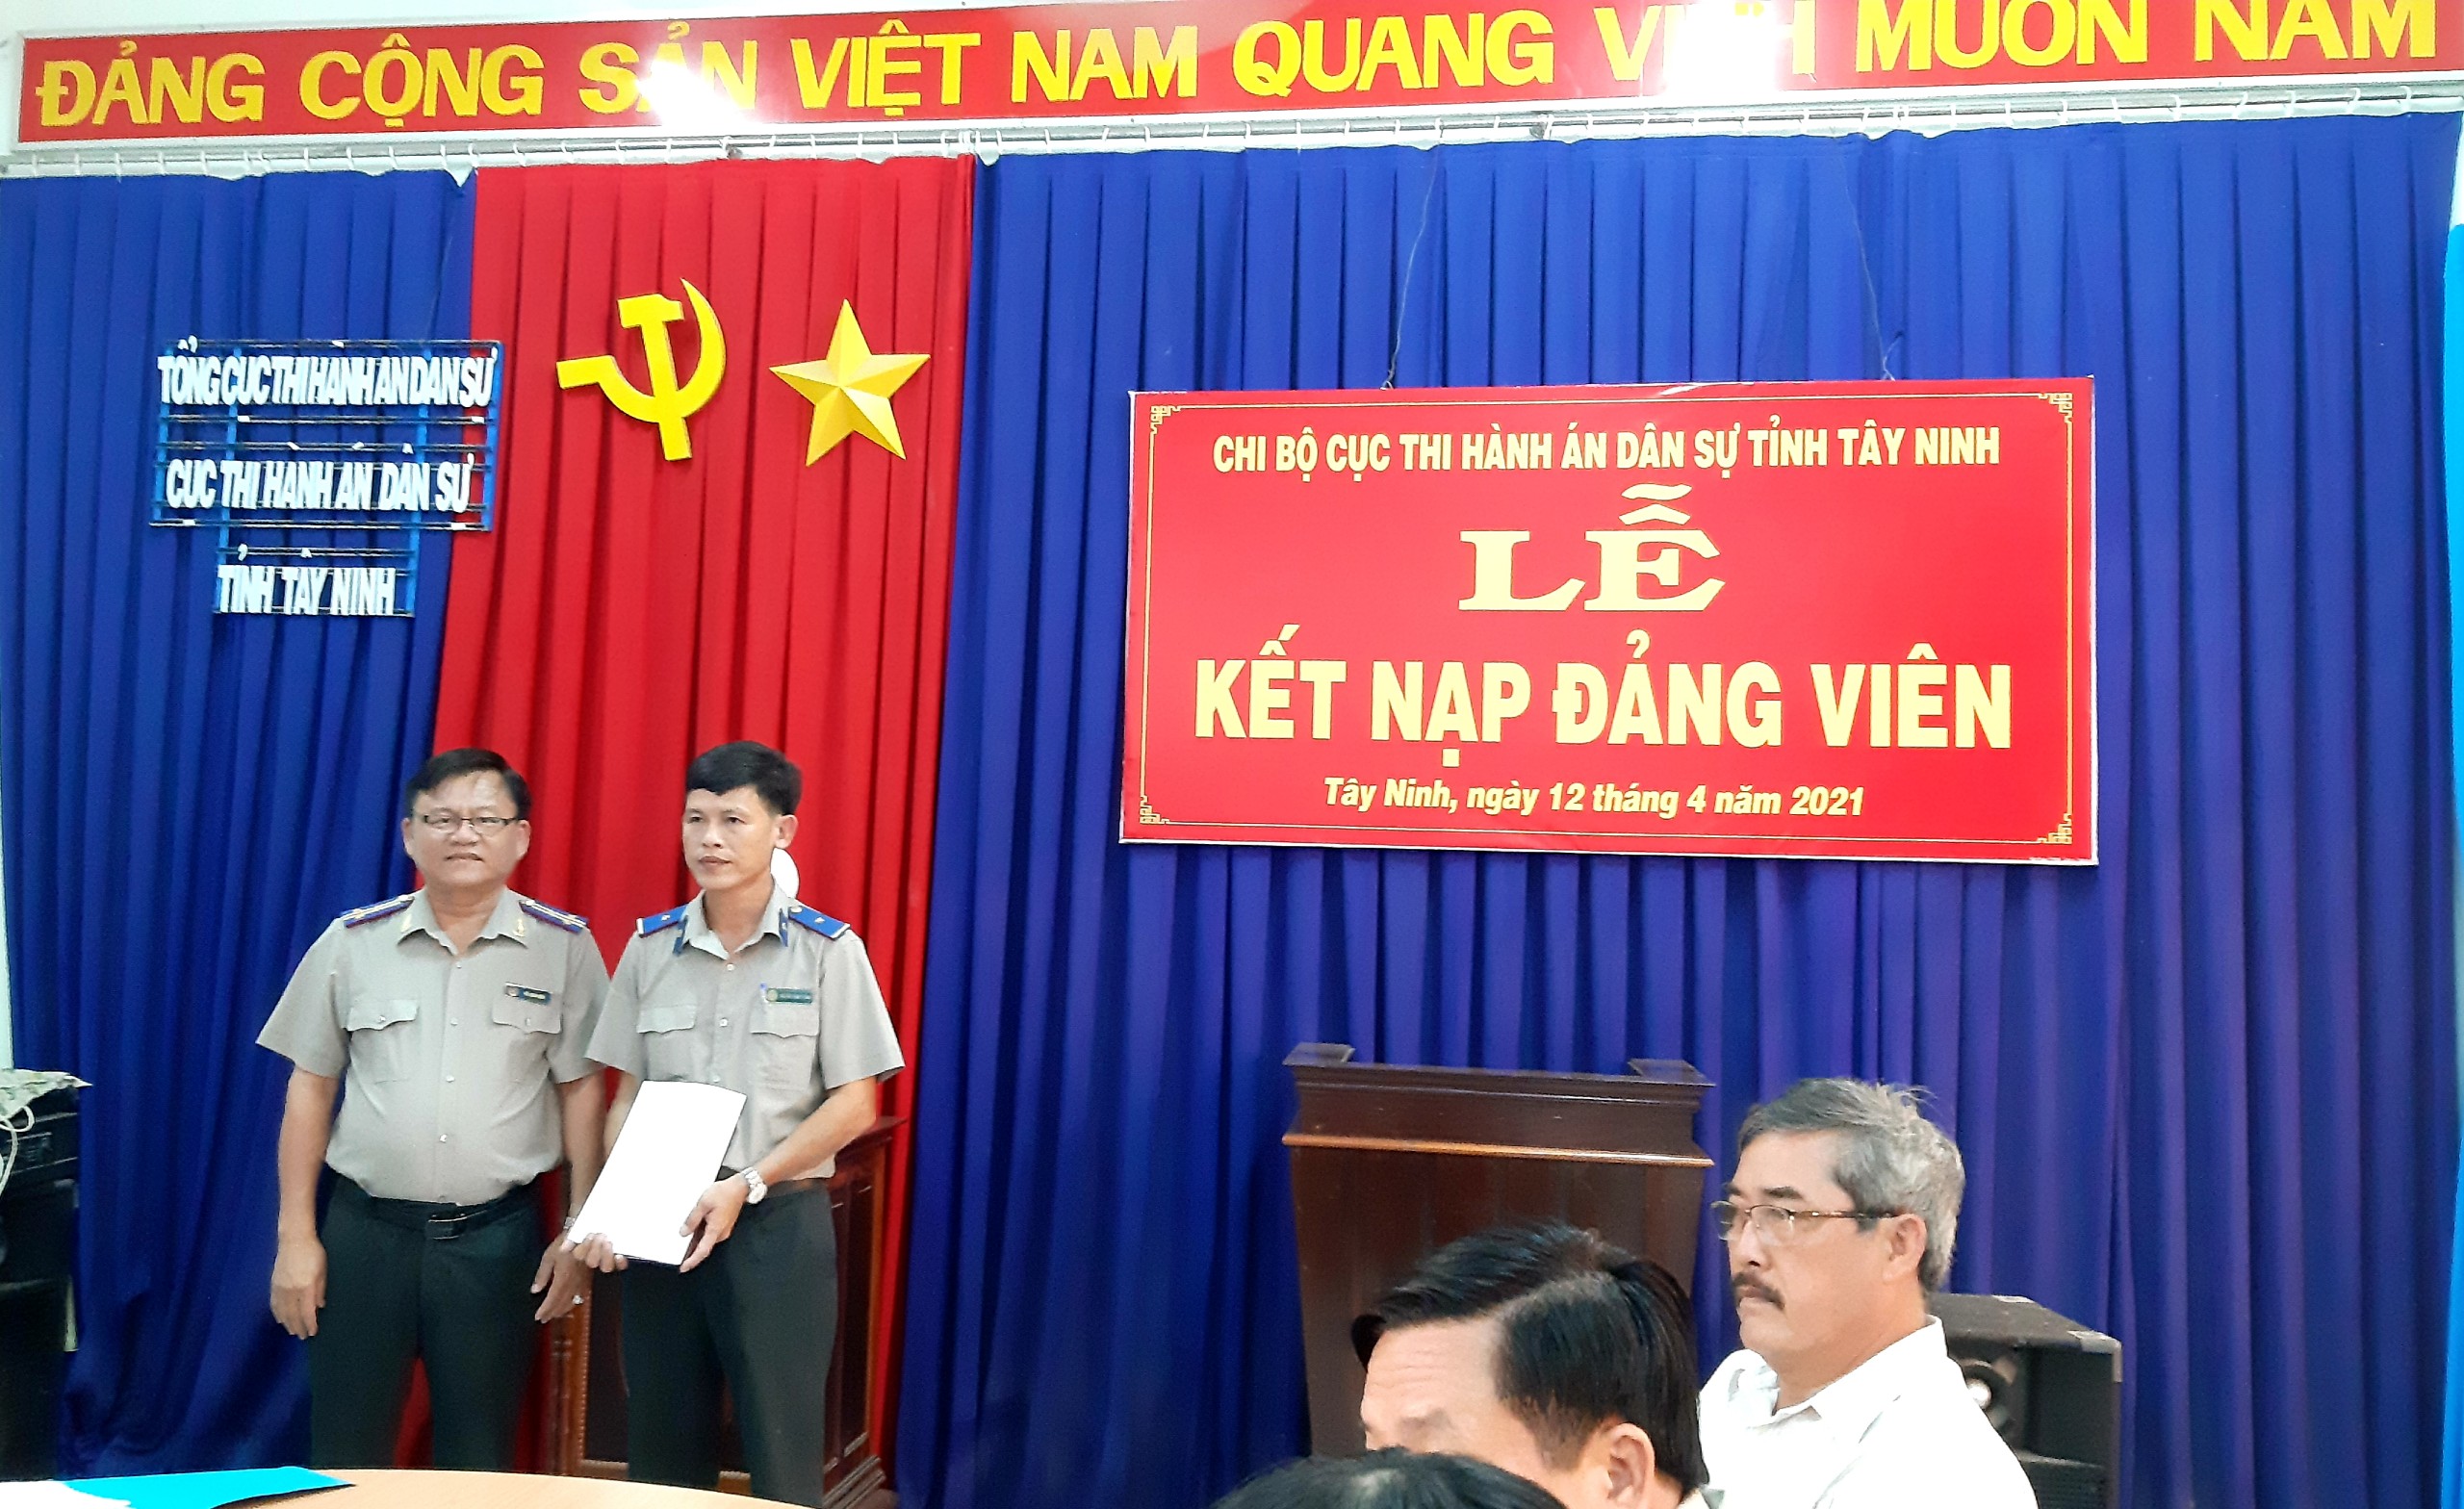 Chi bộ Cục Thi hành án dân sự (THADS) tỉnh Tây Ninh tổ chức Lễ kết nạp Đảng viên mới năm 2021